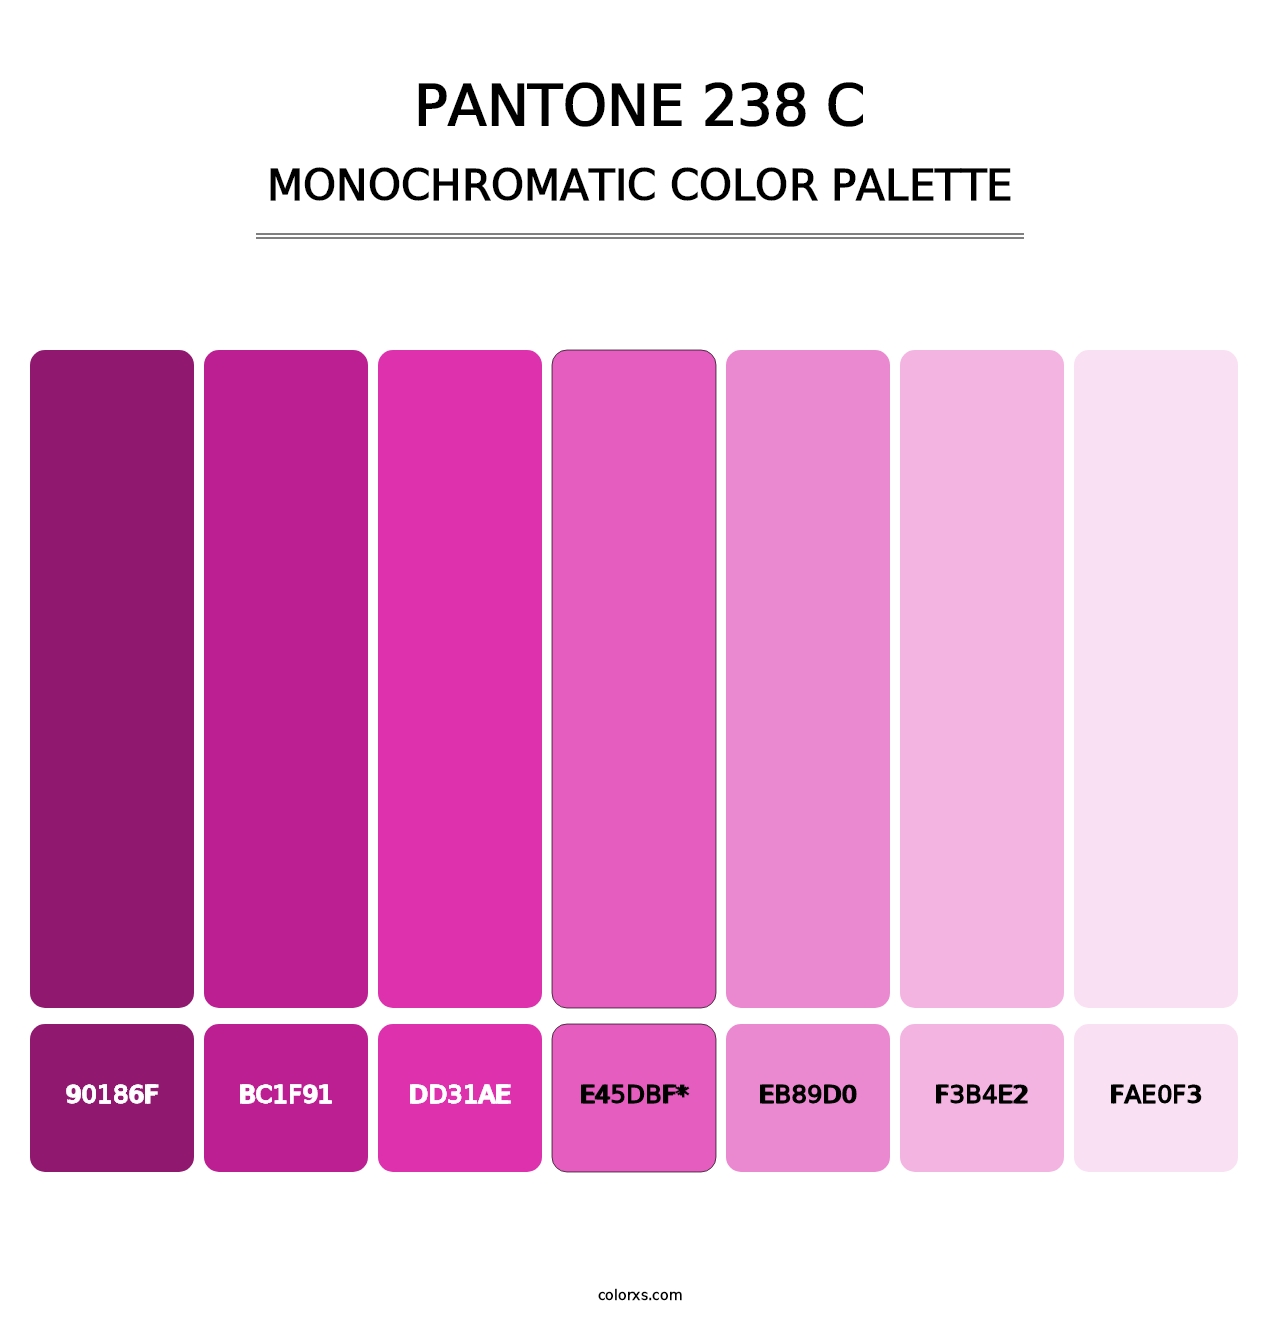 PANTONE 238 C - Monochromatic Color Palette